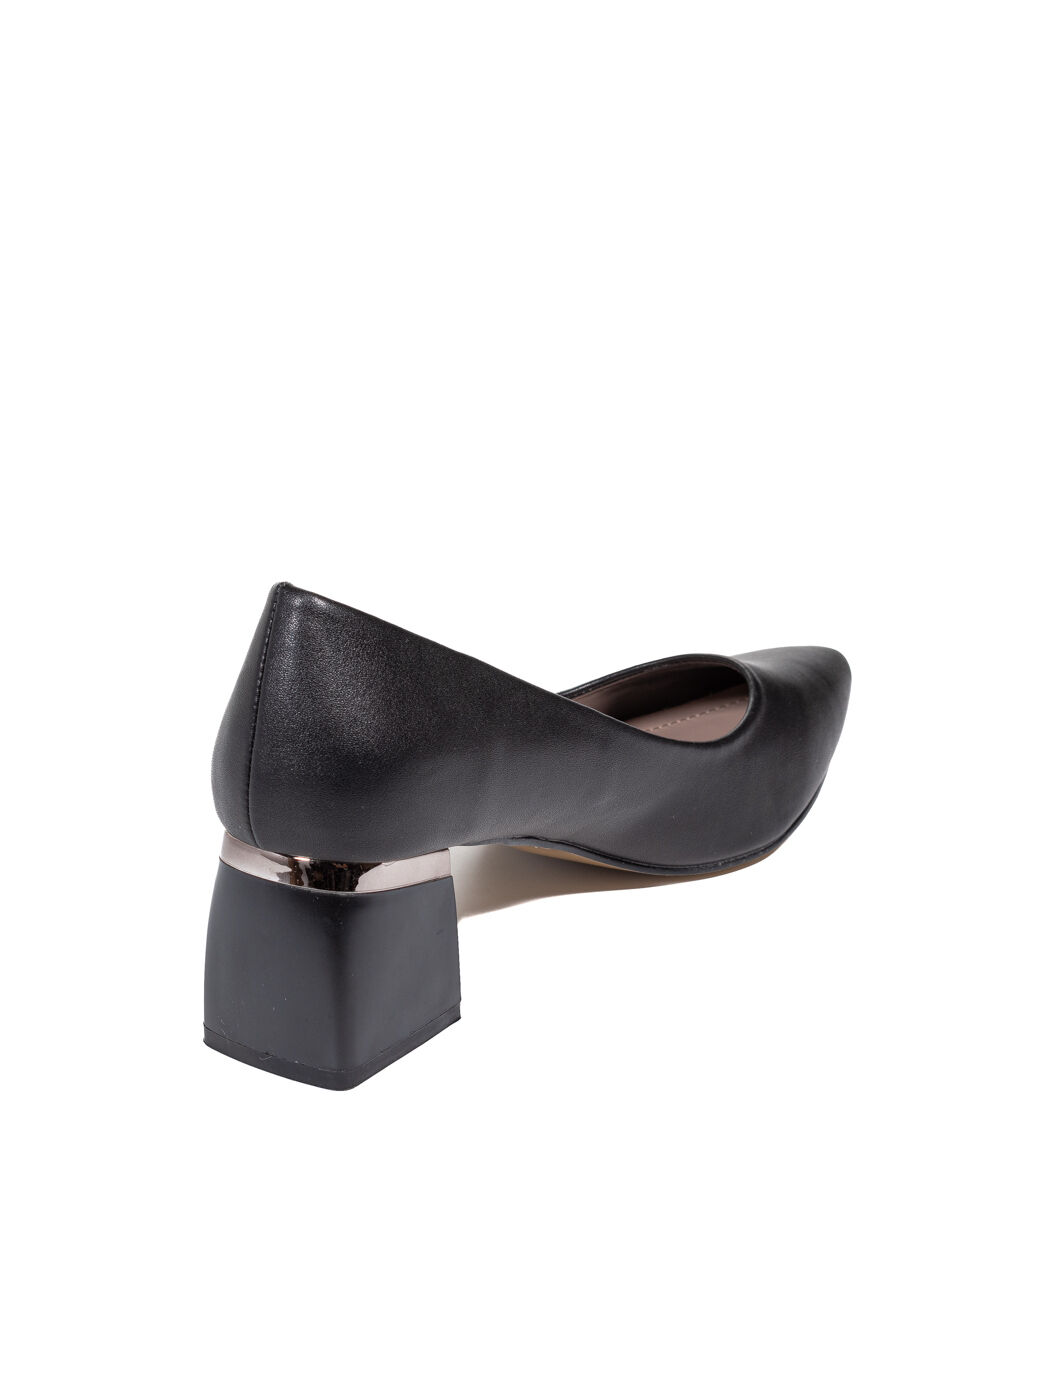 Туфли женские черные экокожа каблук устойчивый демисезон от производителя 6M вид 1